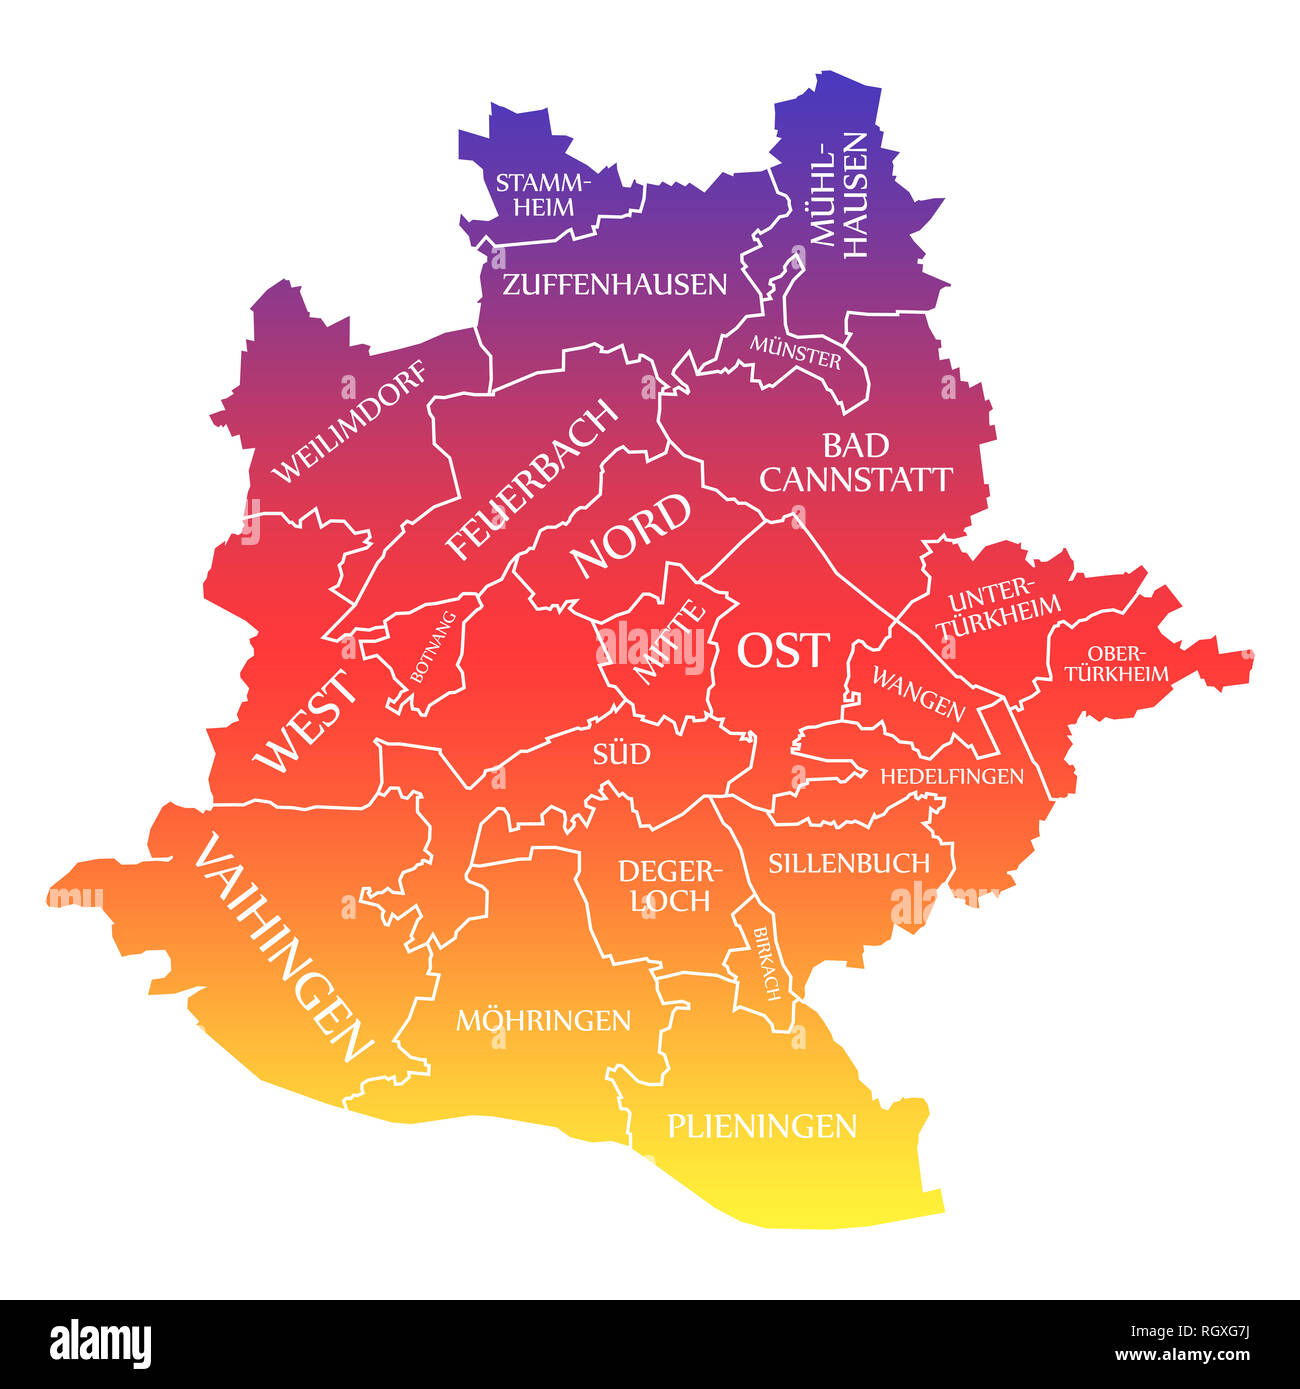 Mapa de la ciudad de Stuttgart Alemania DE etiquetados ilustración color arcoiris Foto de stock